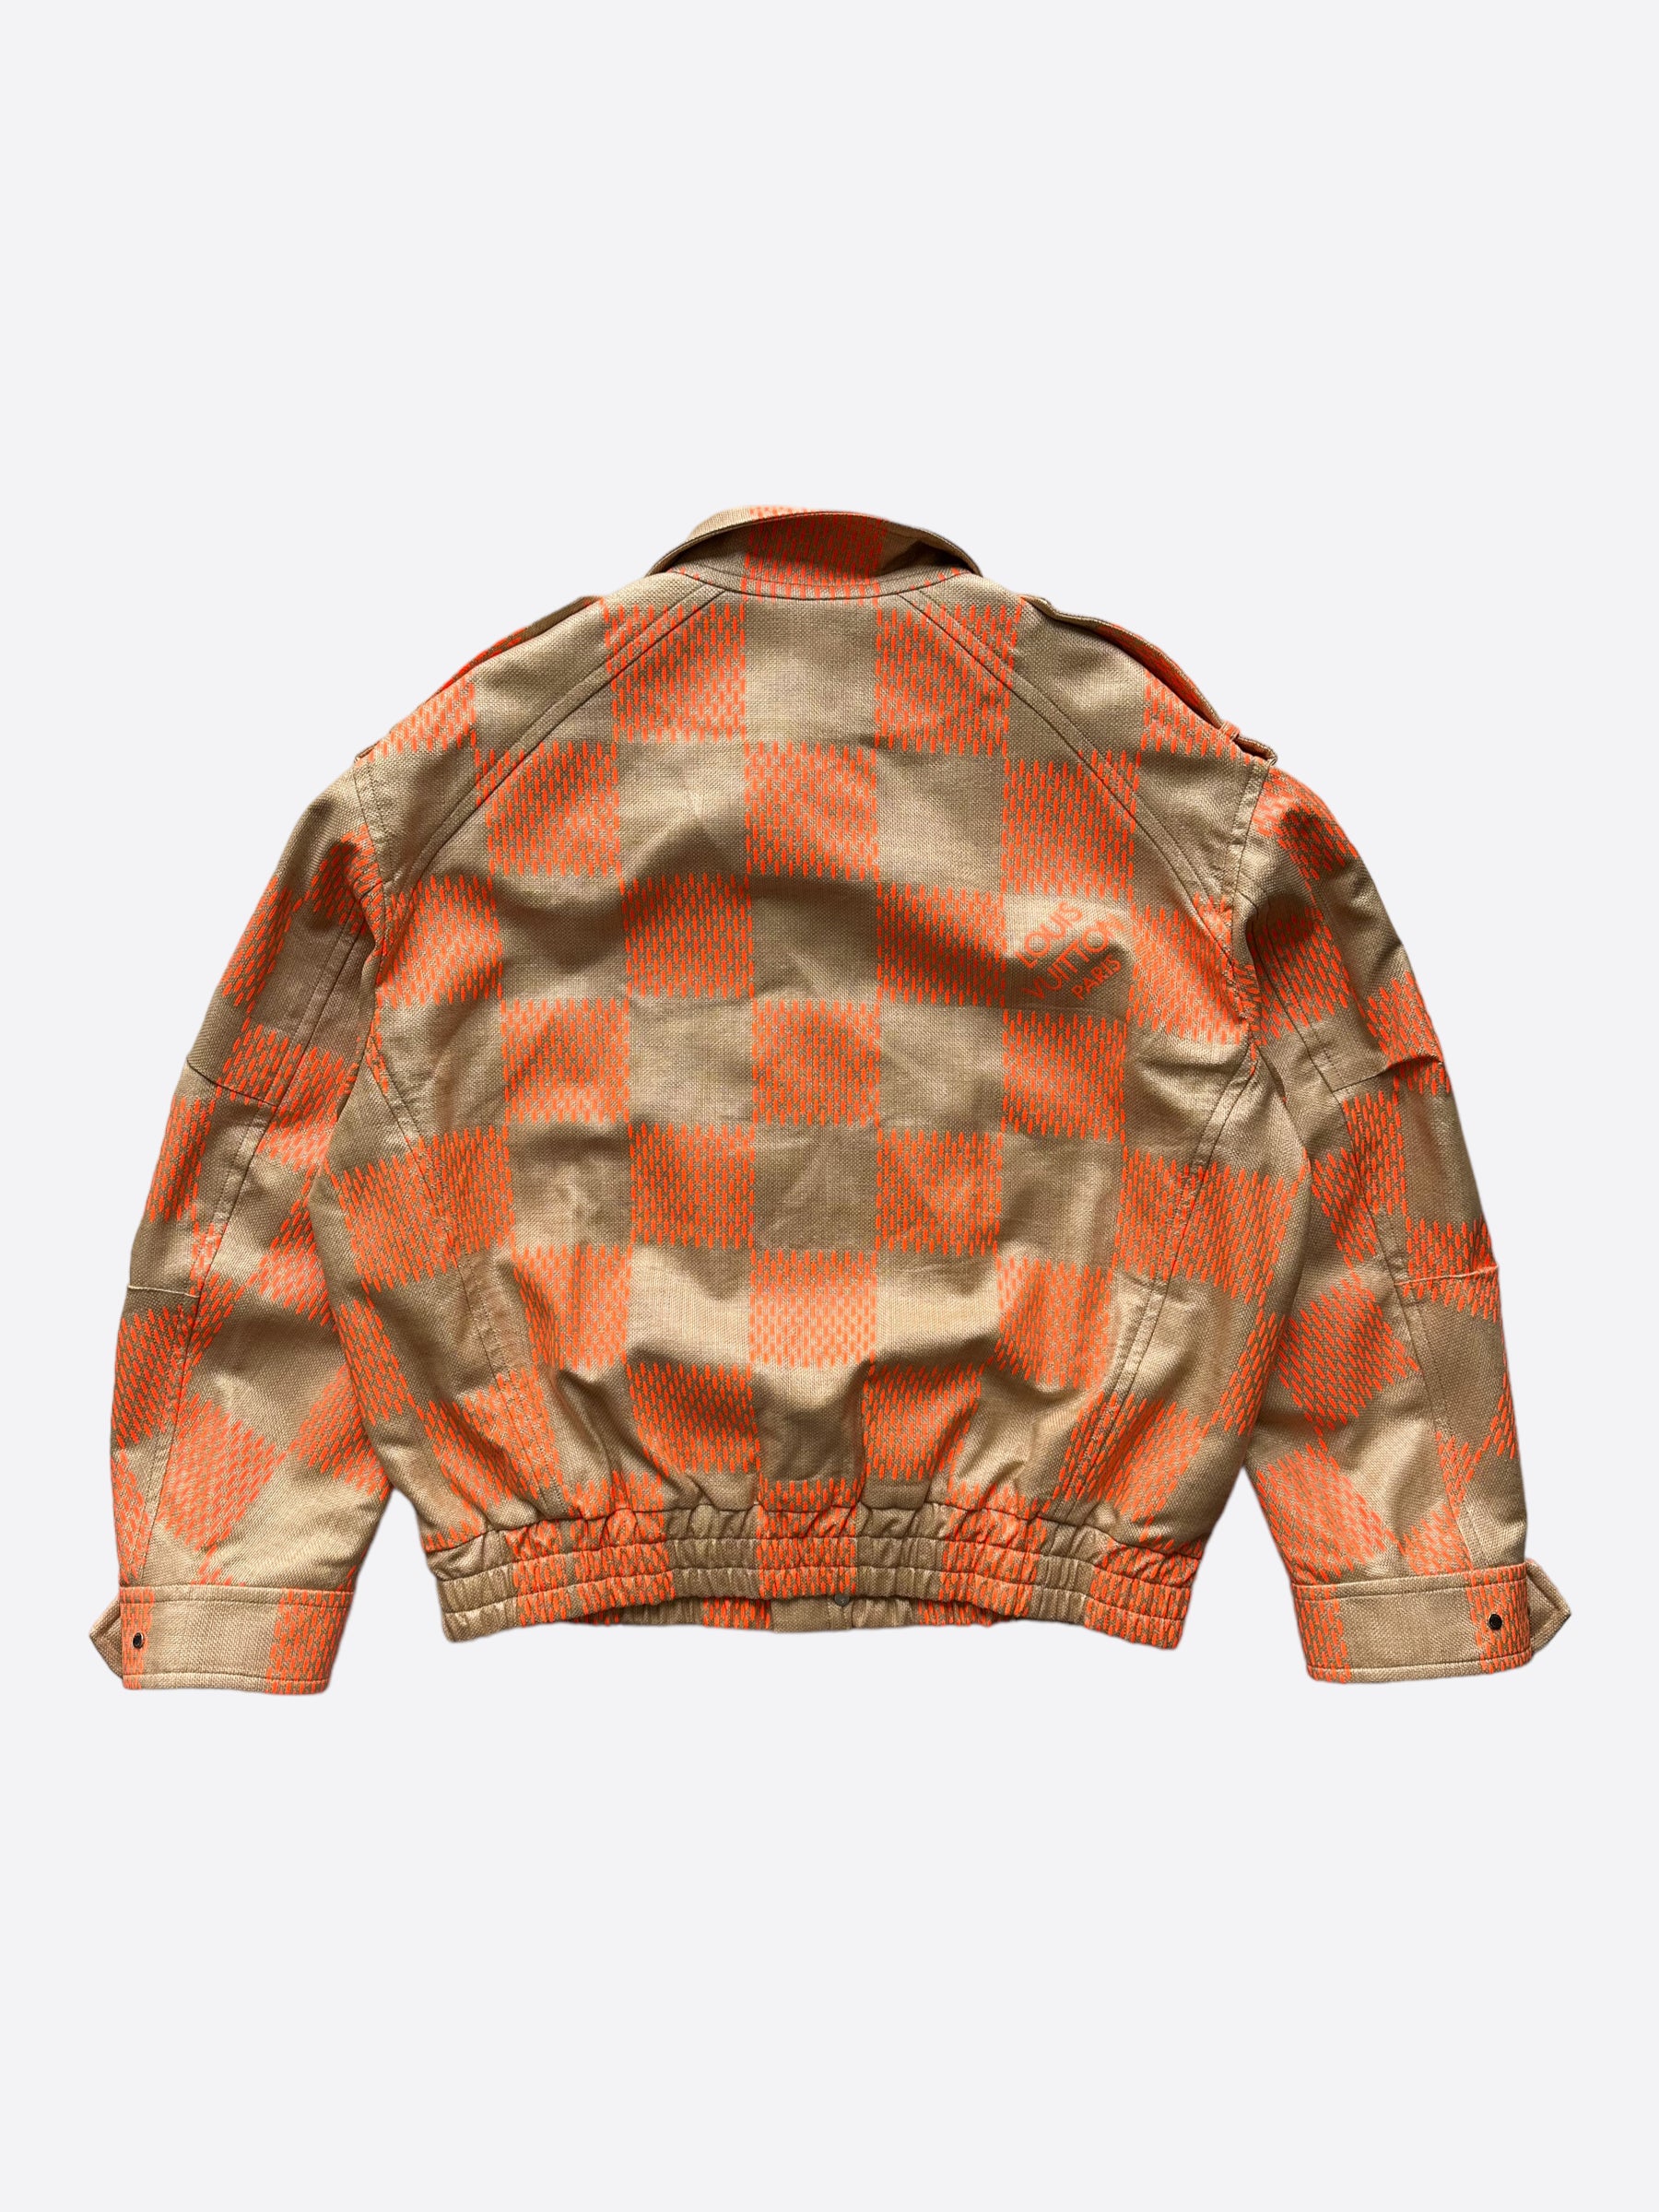 Louis Vuitton - Louis Vuitton Damier Printed Jacket on Designer Wardrobe